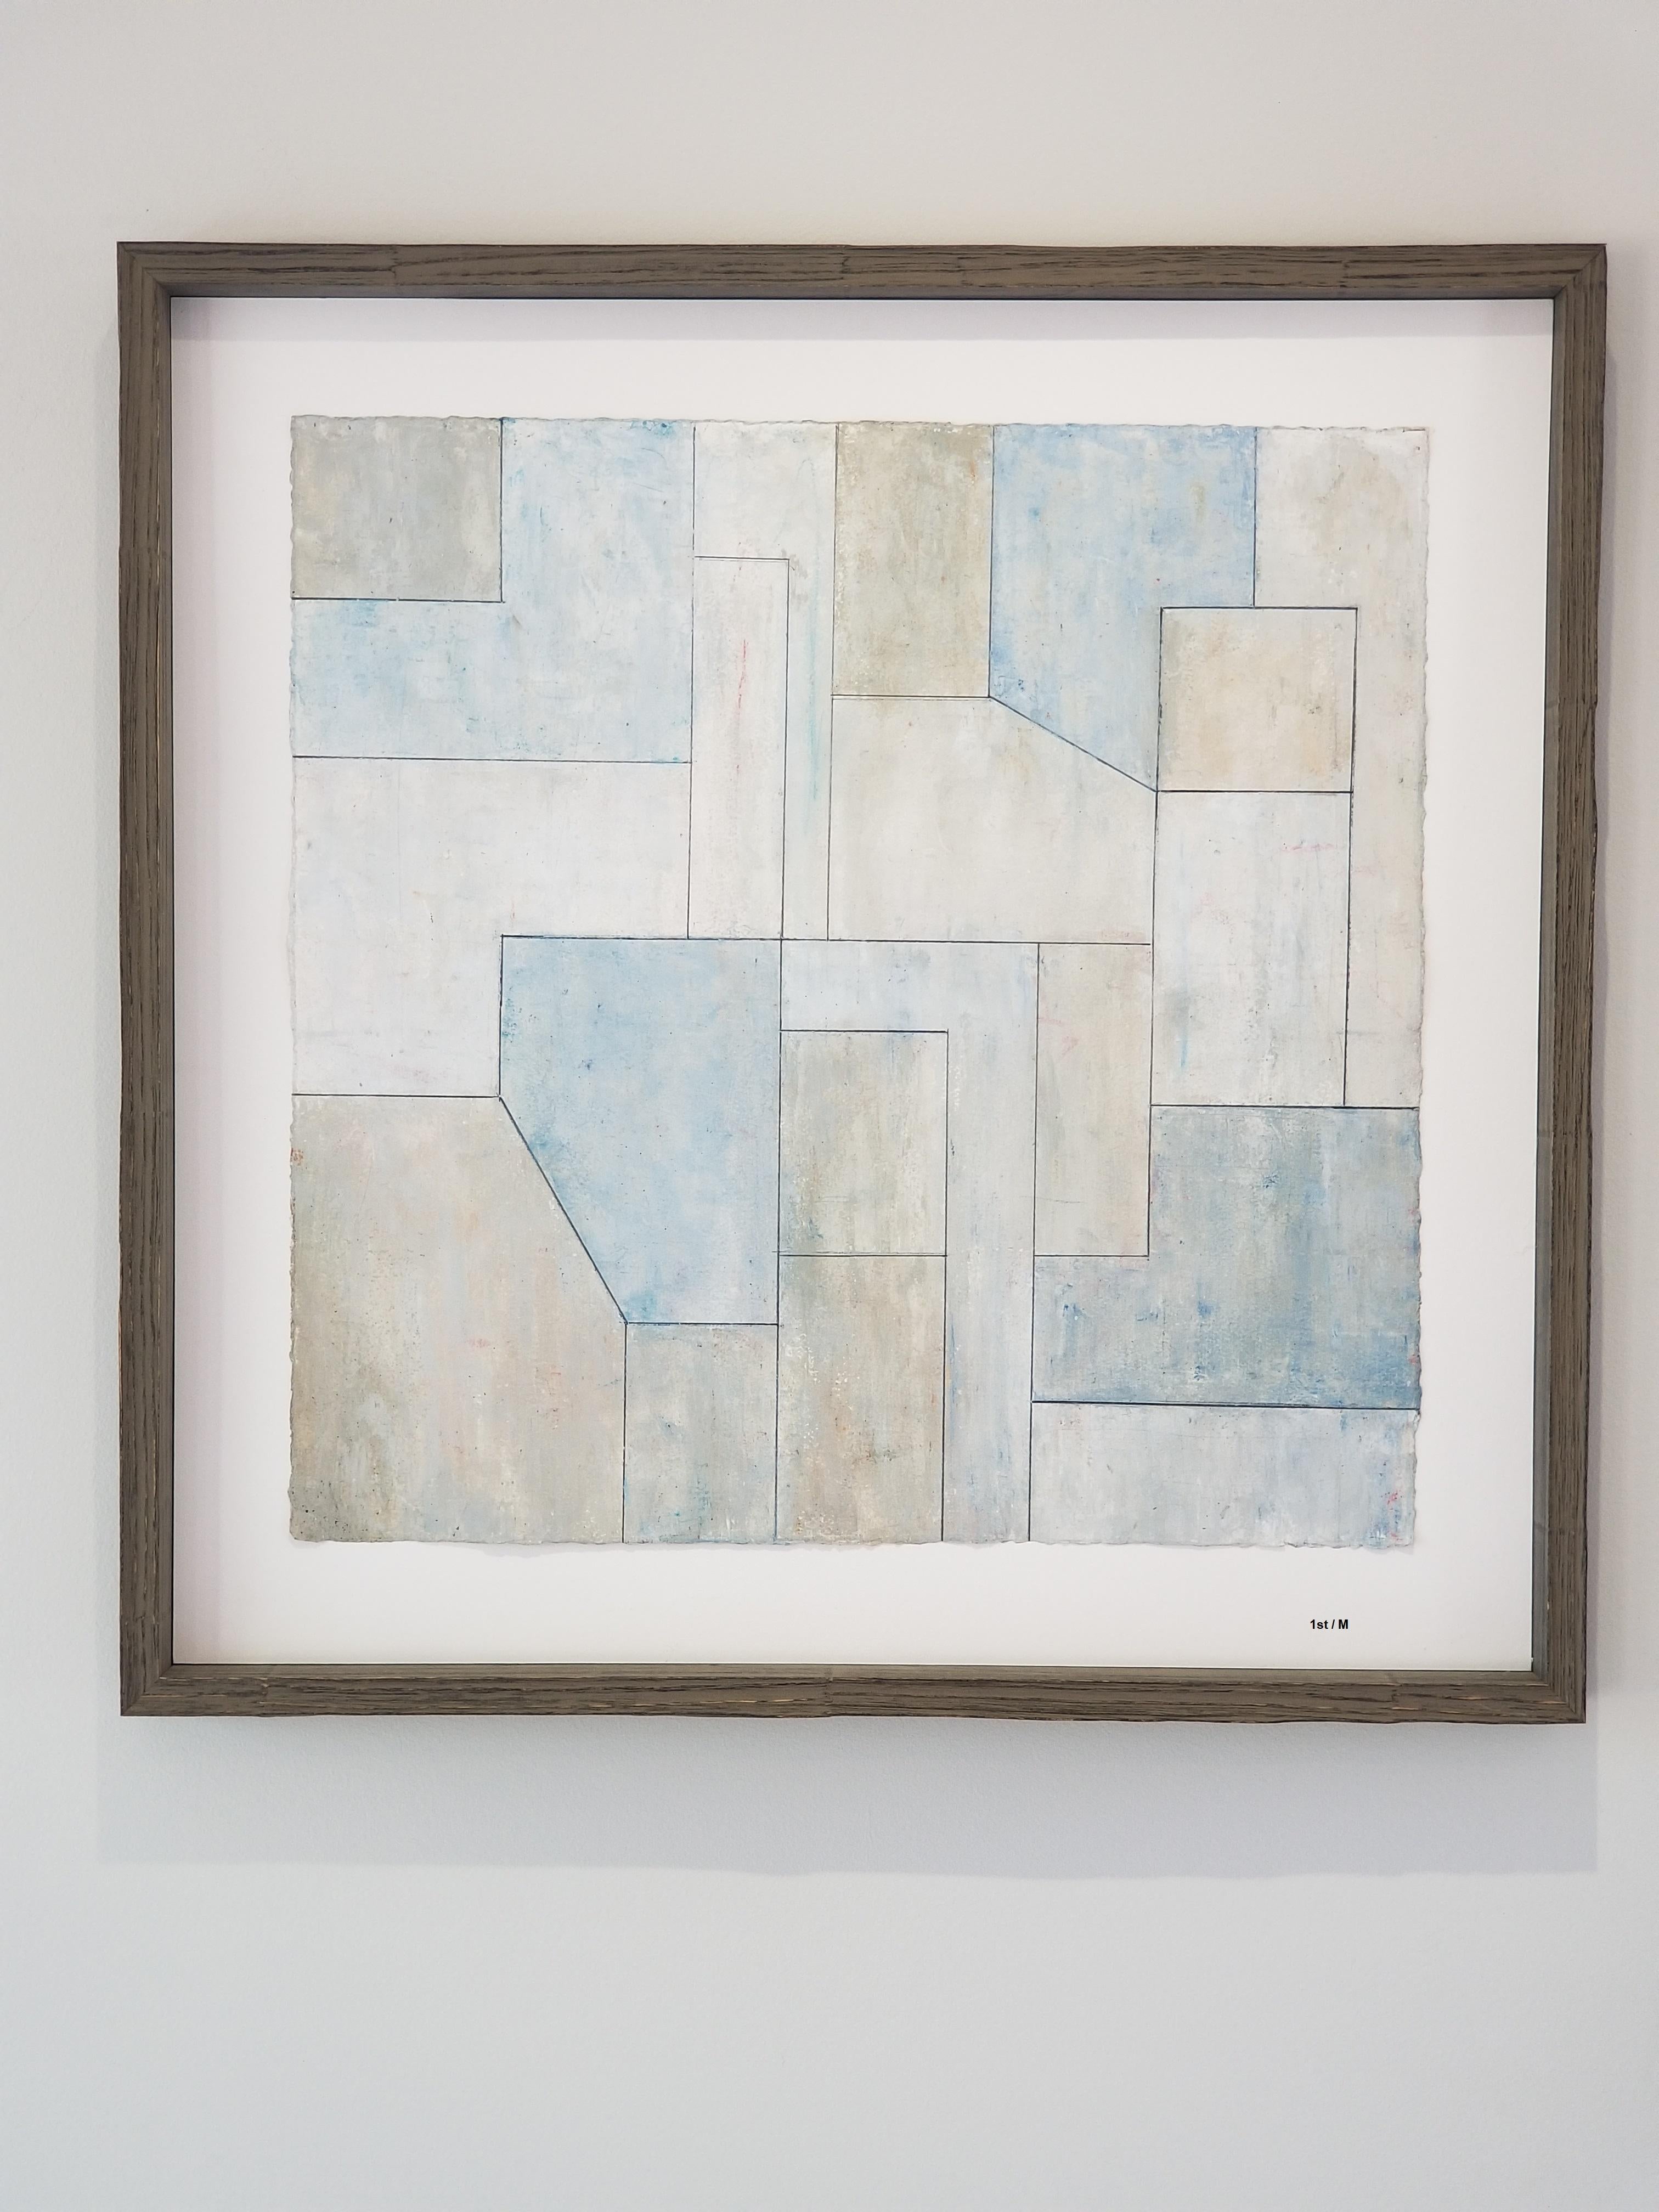 Stephen Cimini Abstract Painting – Archivalistischer Pigmentdruck – gerahmt in Naturholz – Blau und Grau 1